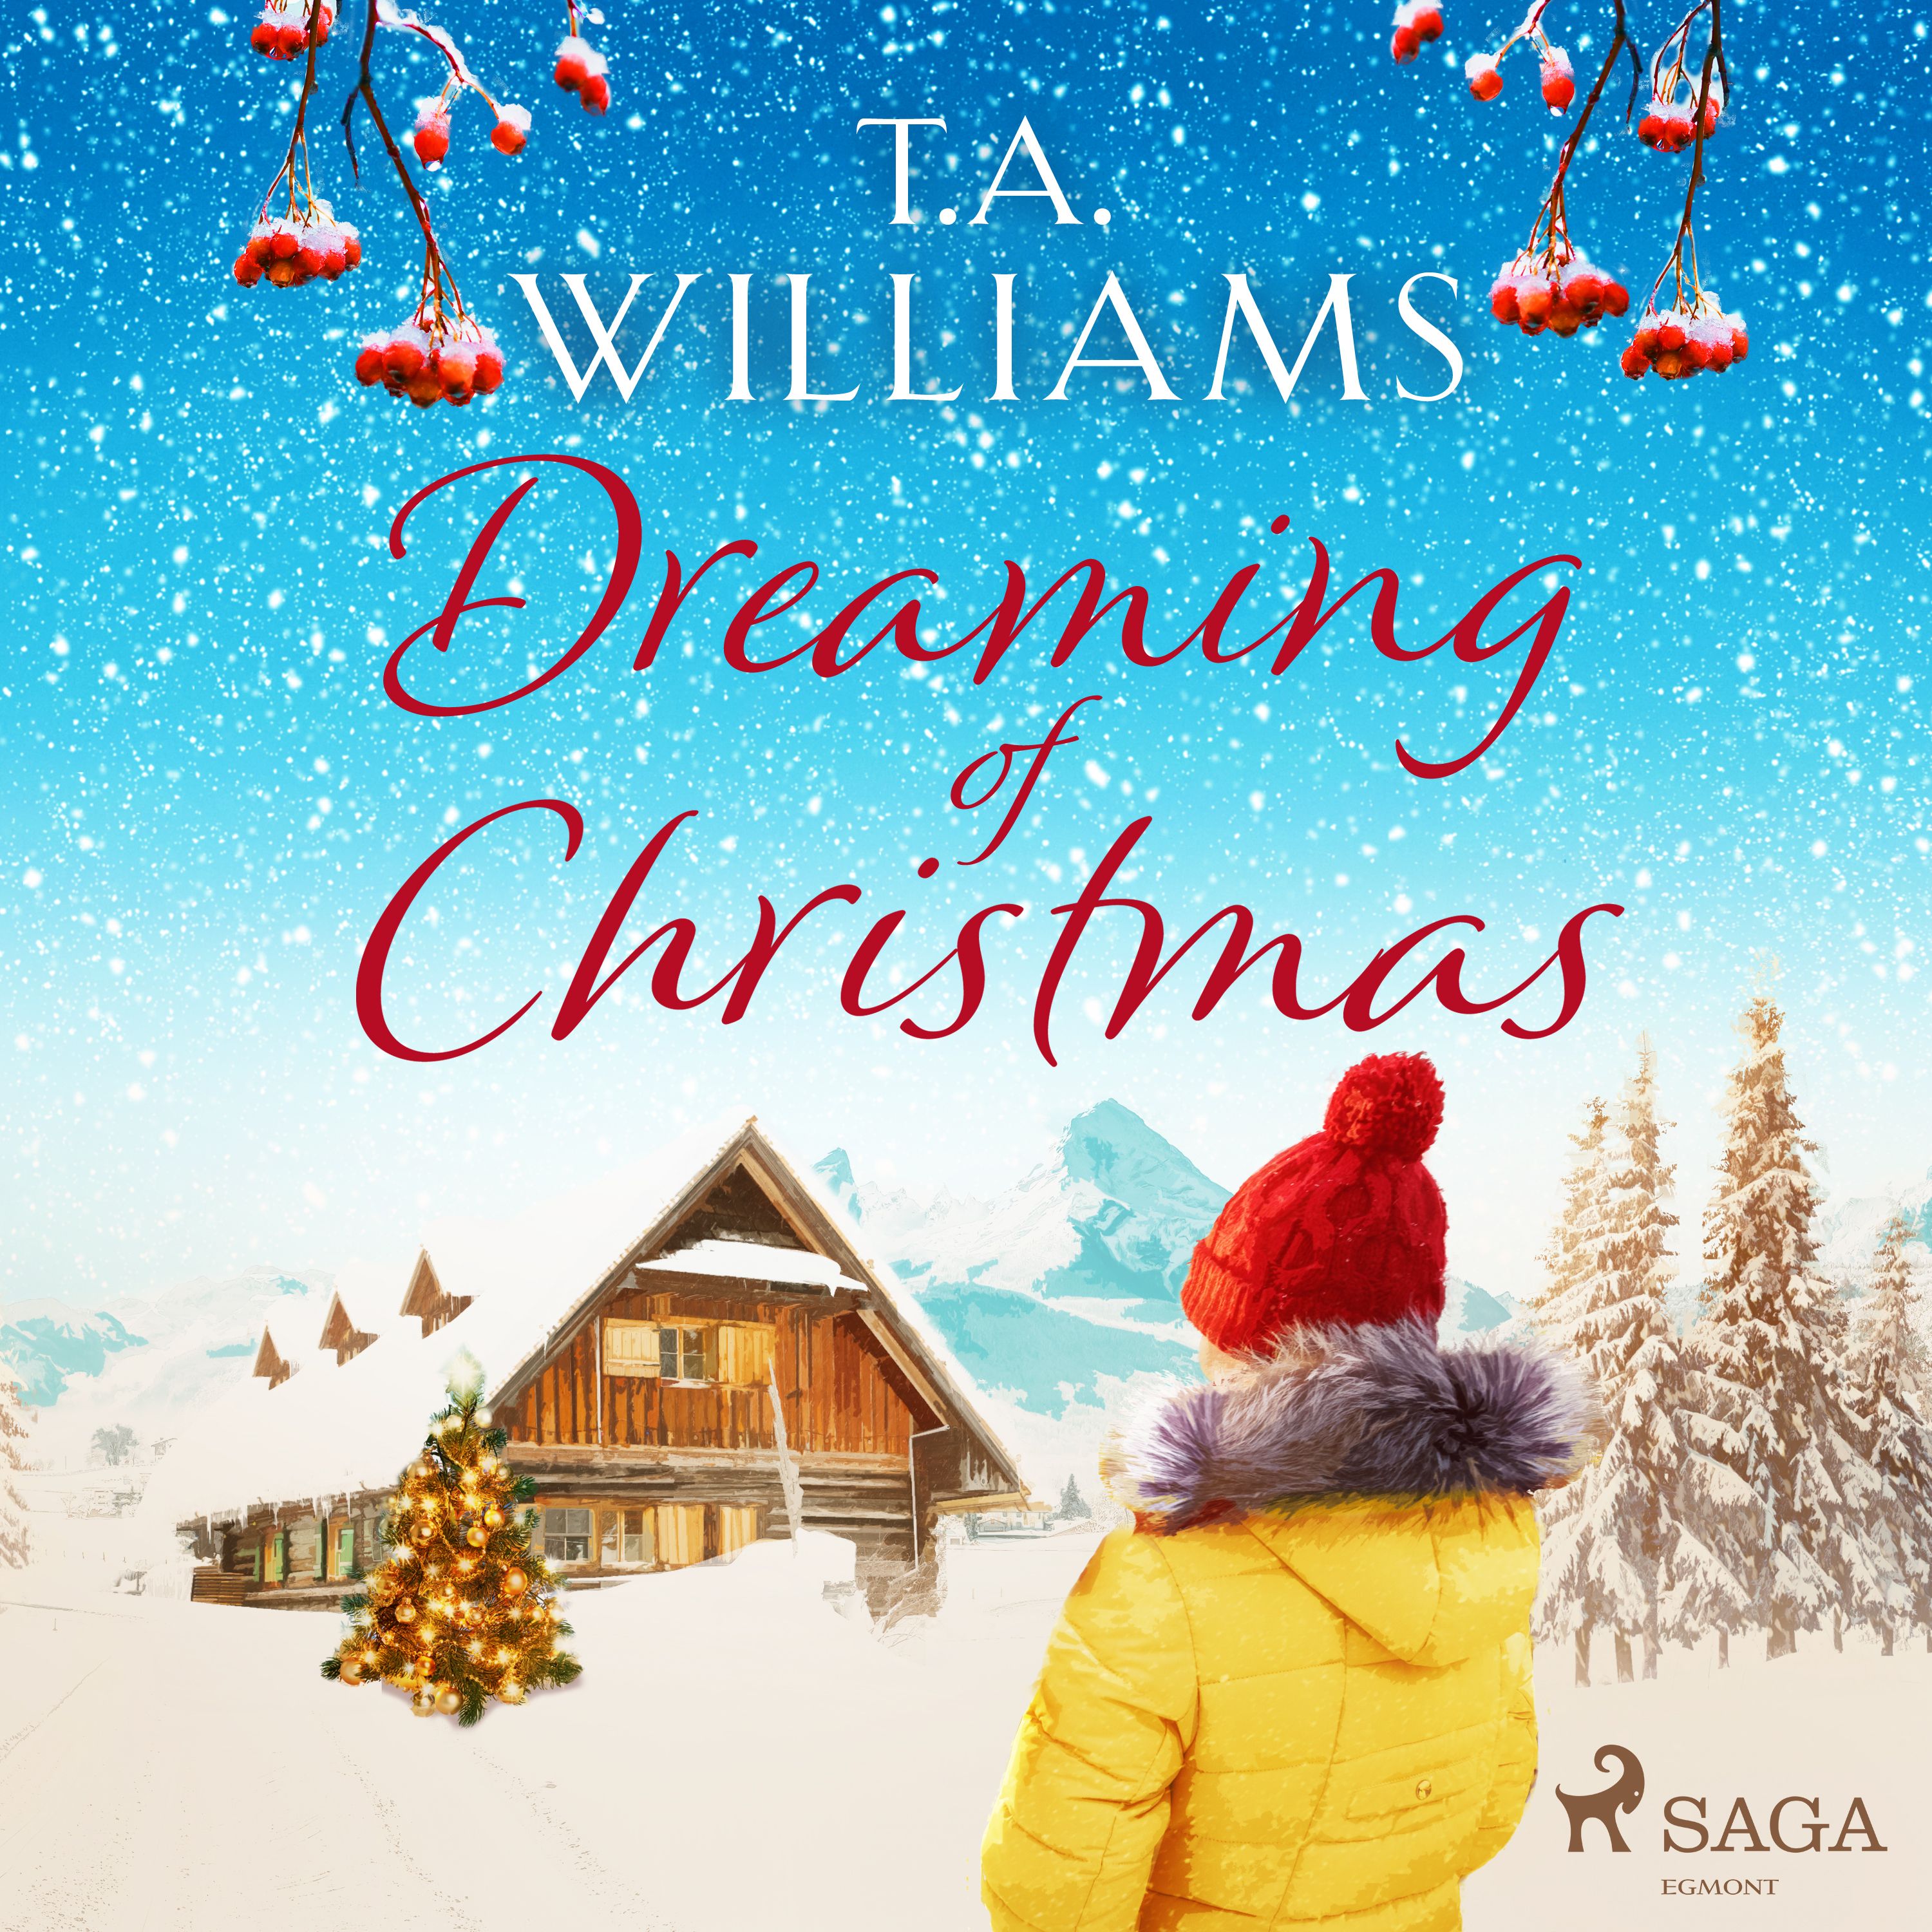 Dreaming of Christmas, ljudbok av T.A. Williams